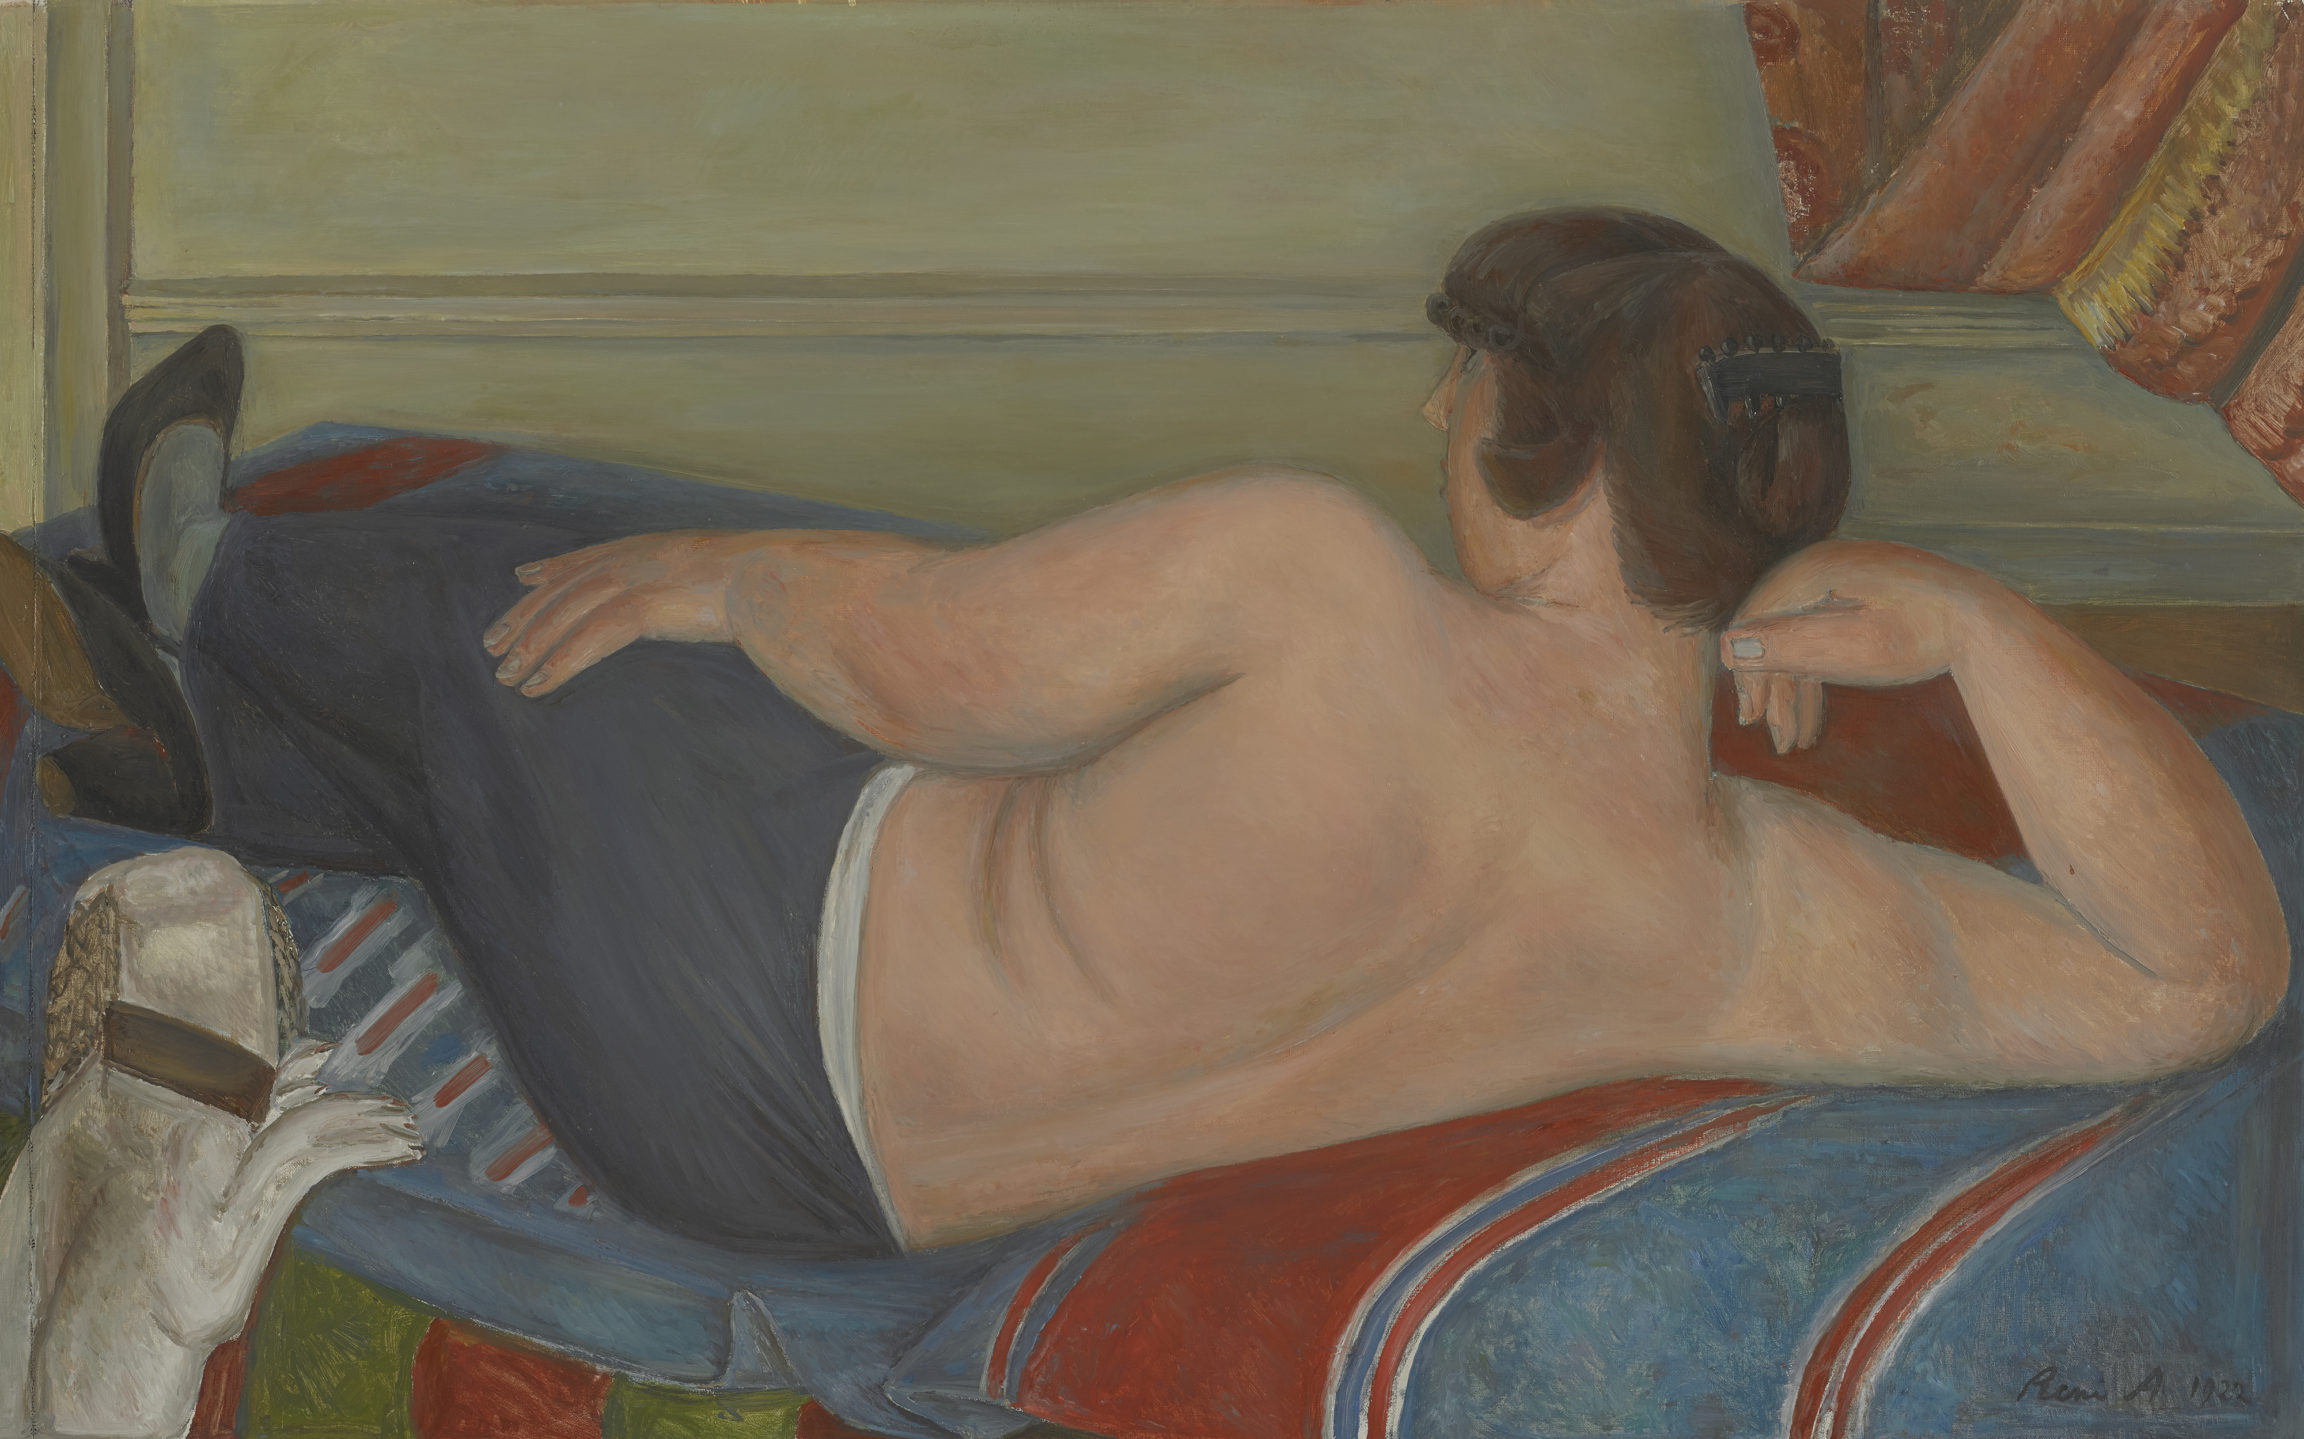 René Auberjonois , Grand nu couché or Nu étendu avec chien (Large reclining nude or Nude reclining with dog), 1922/1923